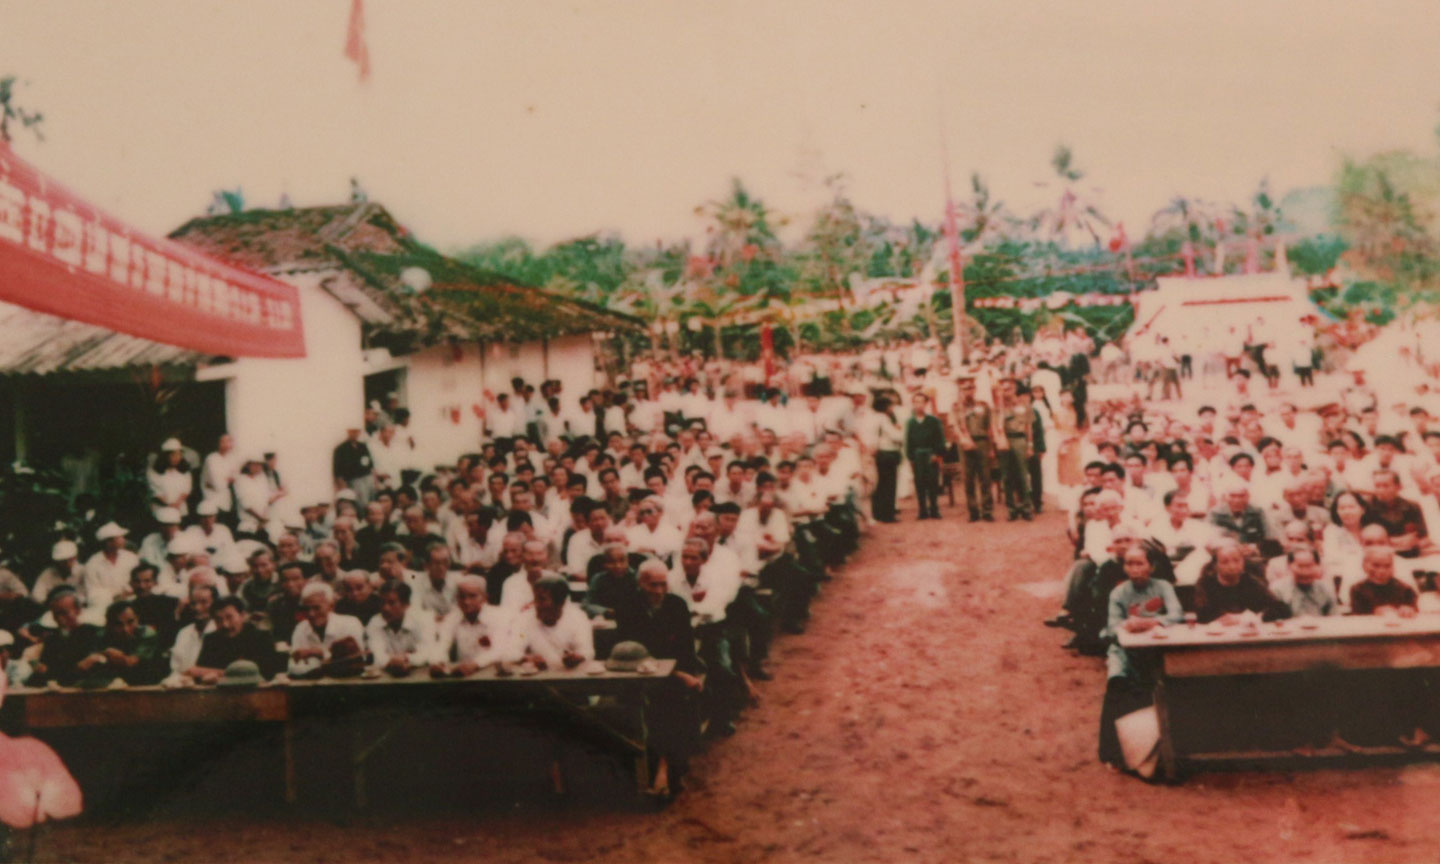 Quang cảnh buổi lễ mít tinh kỷ niệm 55 năm ngày Nam kỳ khởi nghĩa tại di tích Đình Long Hưng.